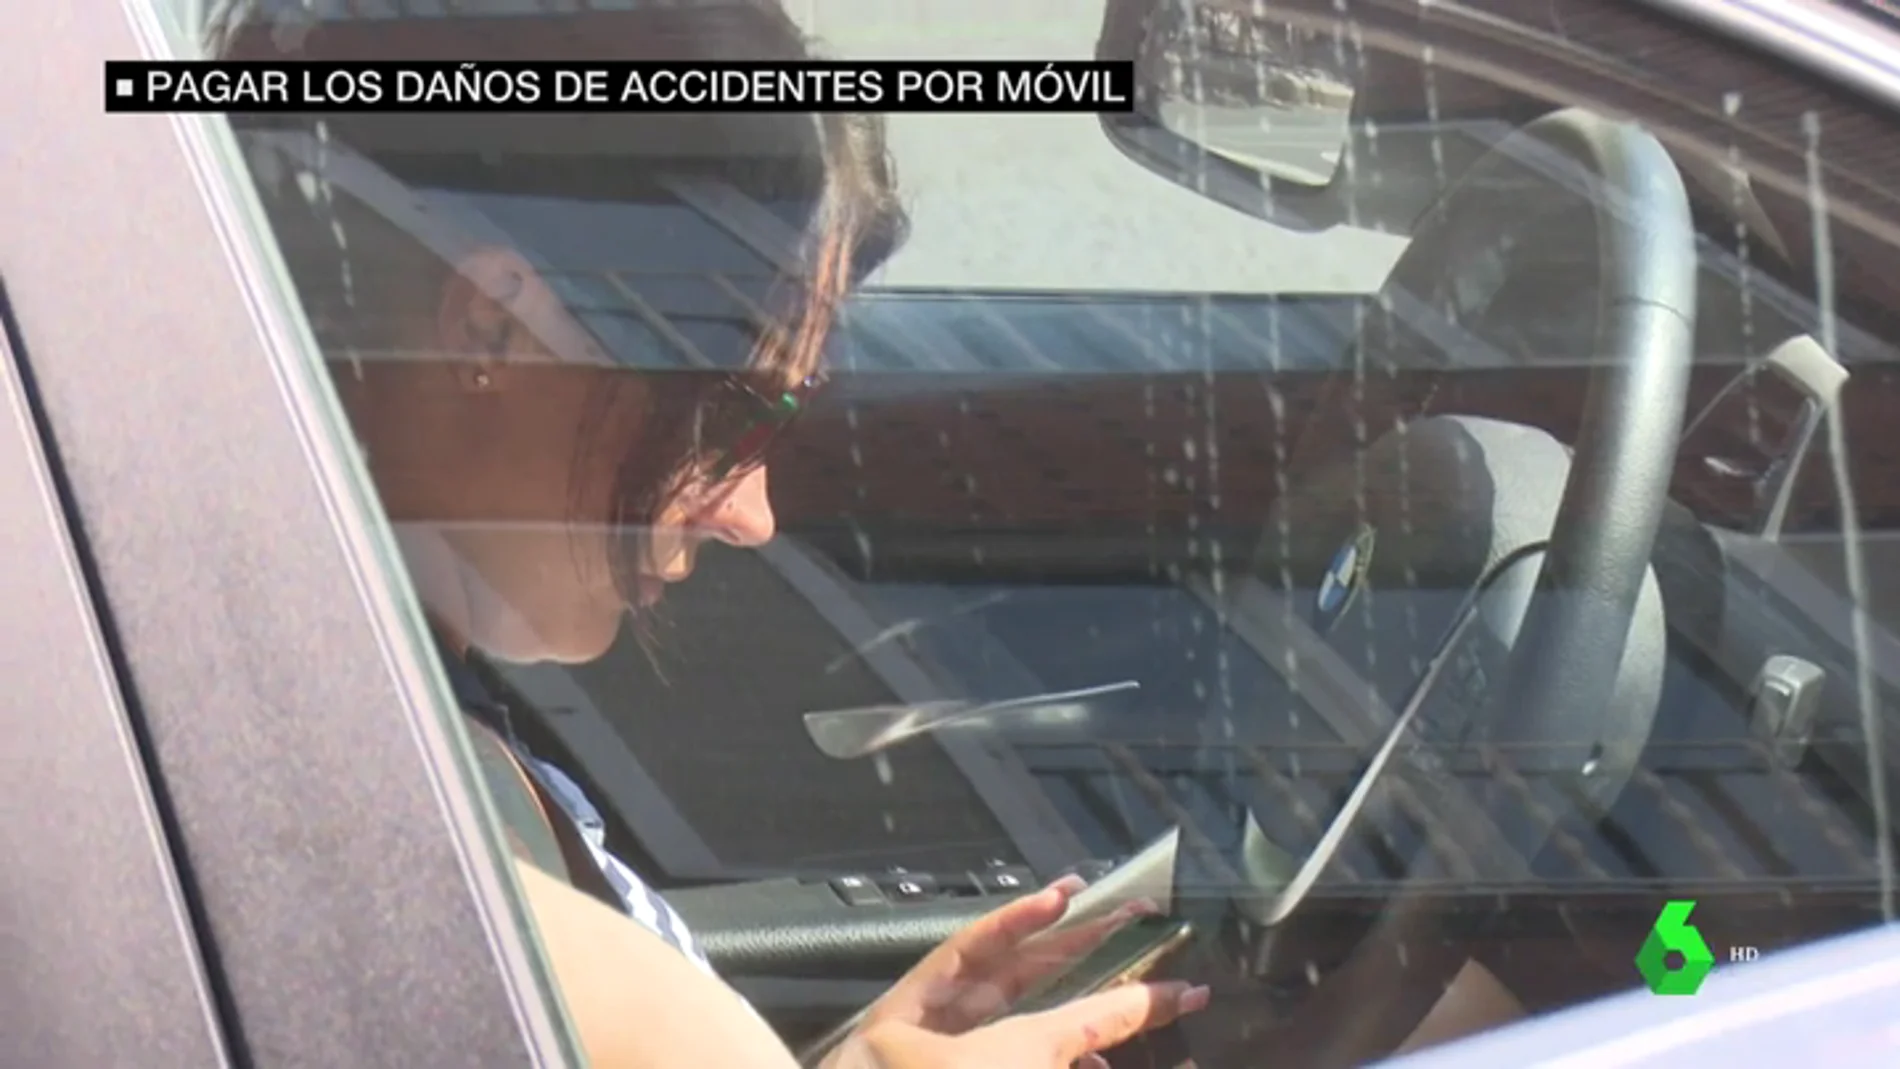 Los conductores que usen el móvil pagarán el coste de sus accidentes: la nueva propuesta de la DGT  para reducir las muertes al volante